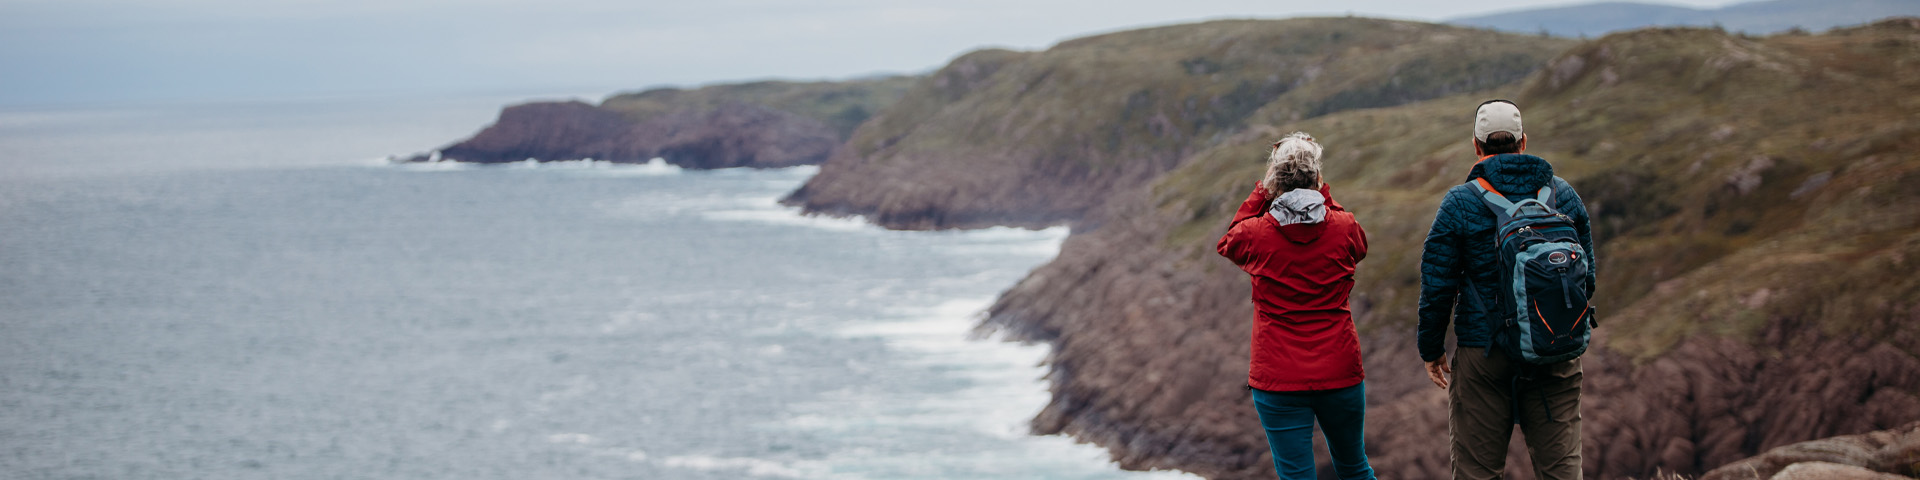 deux personnes debout sur un chemin en haut d'une falaise surplombant un sentier côtier